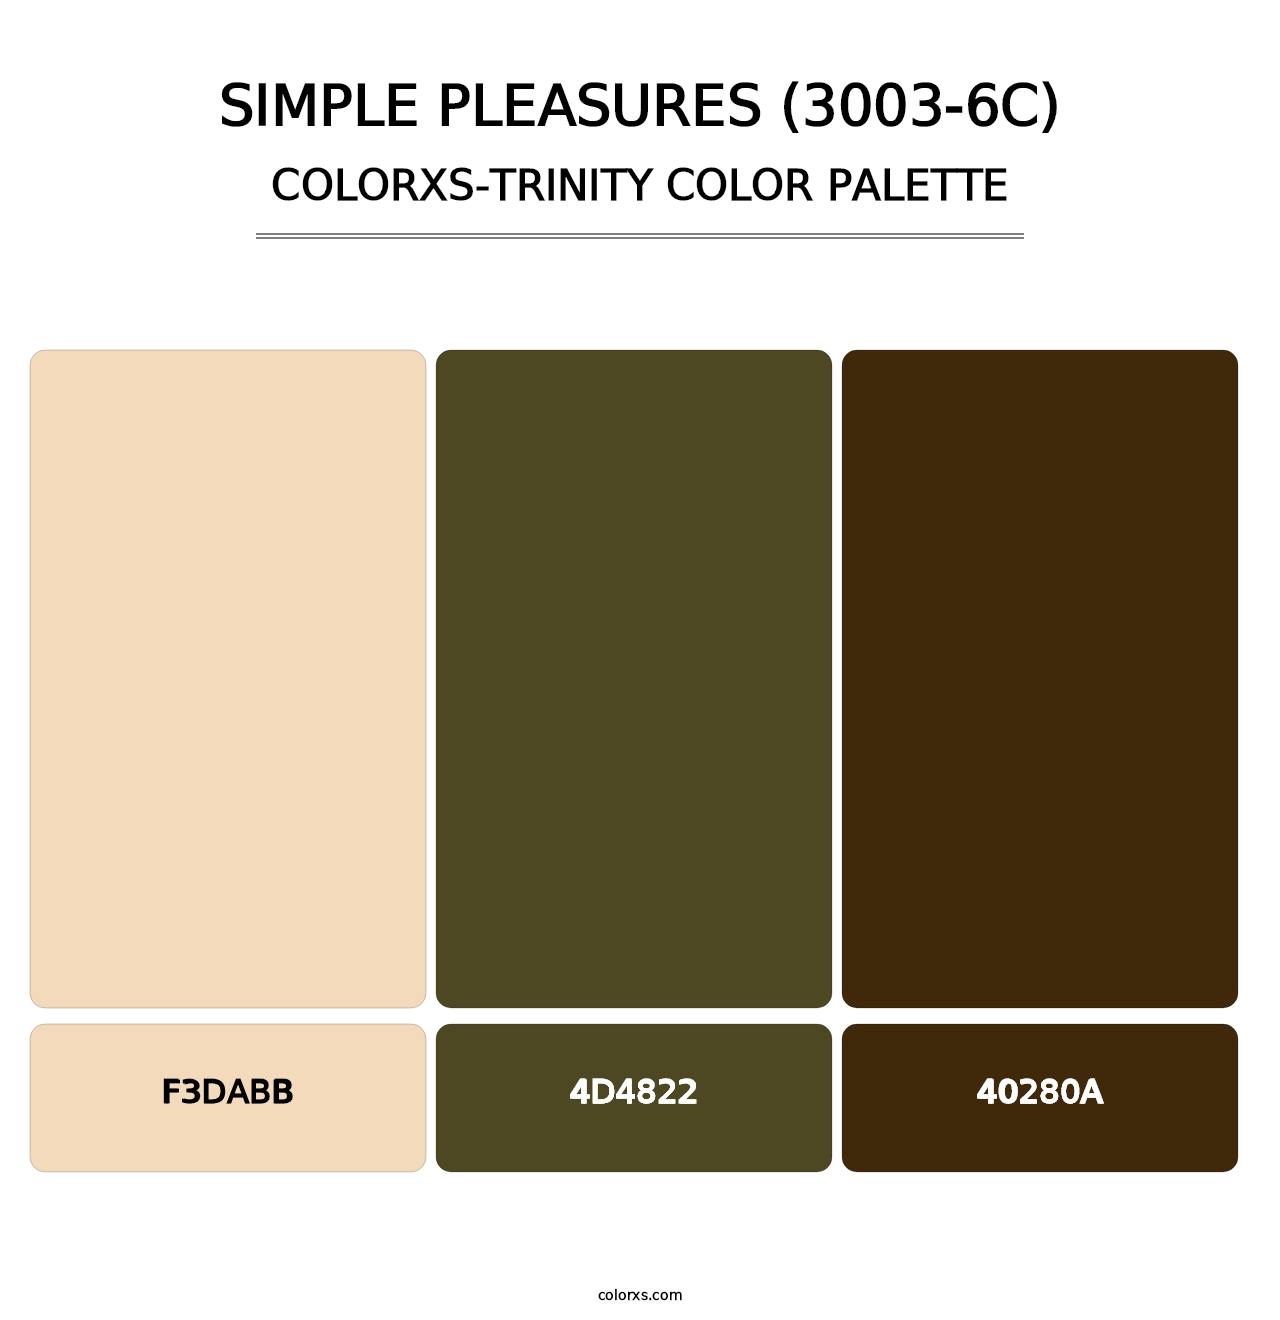 Simple Pleasures (3003-6C) - Colorxs Trinity Palette